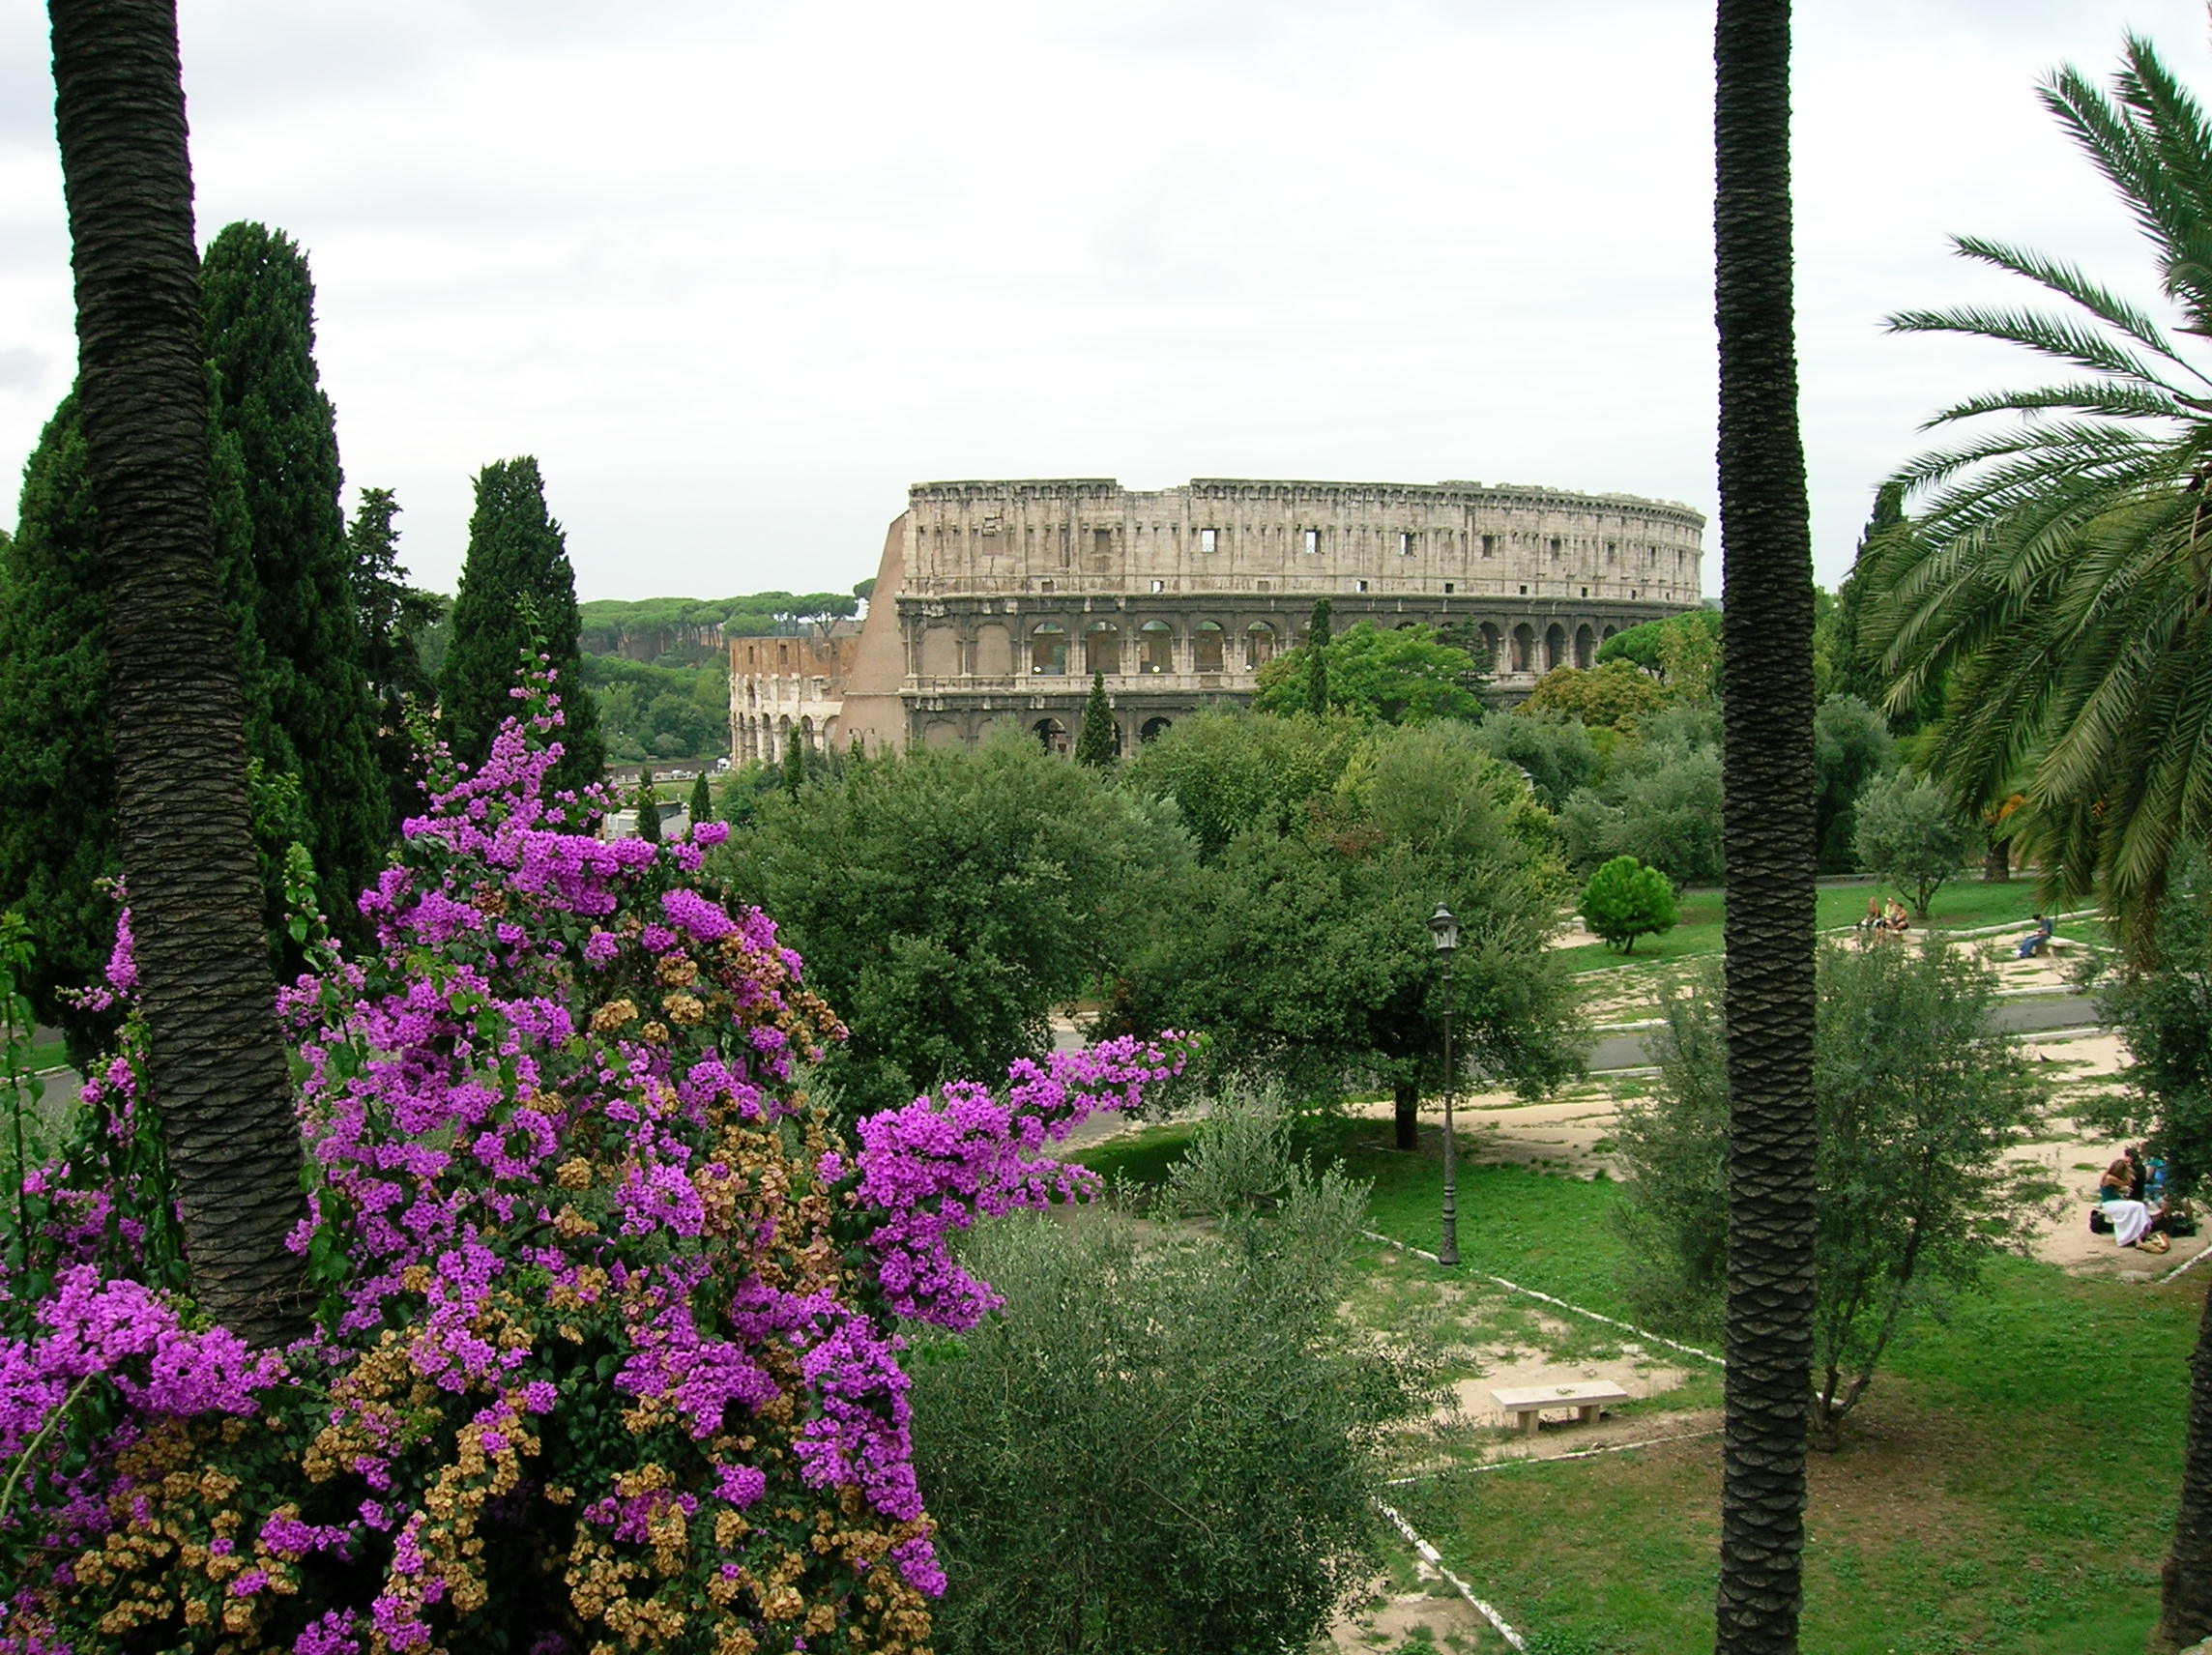 View from Domus Aurea, Rome